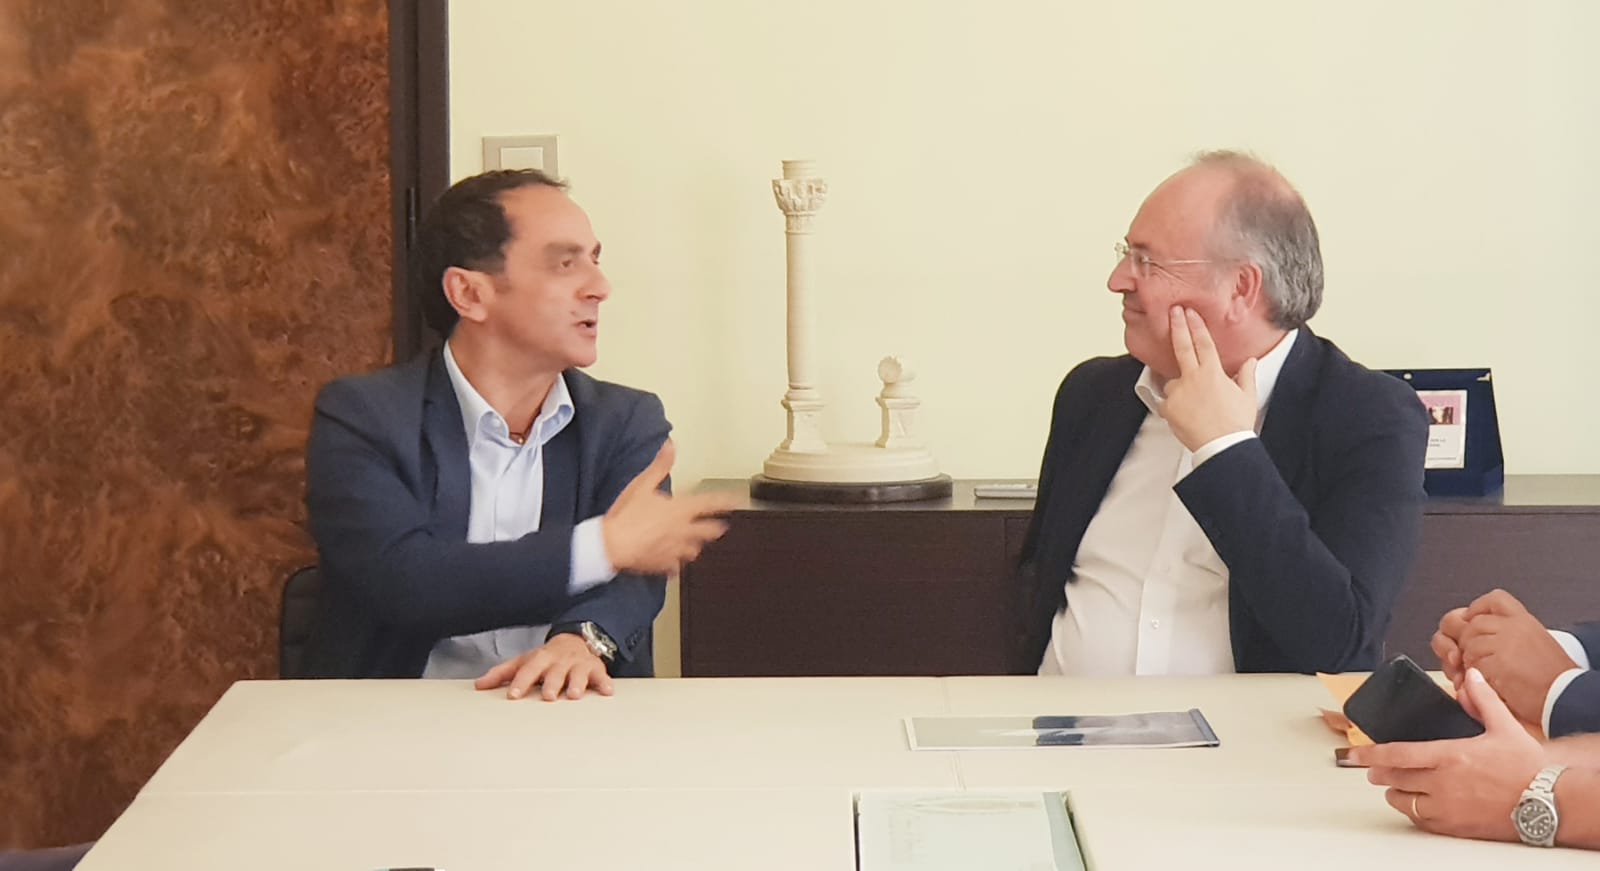 Il sindaco incontra il nuovo rettore dell’Università di Bari